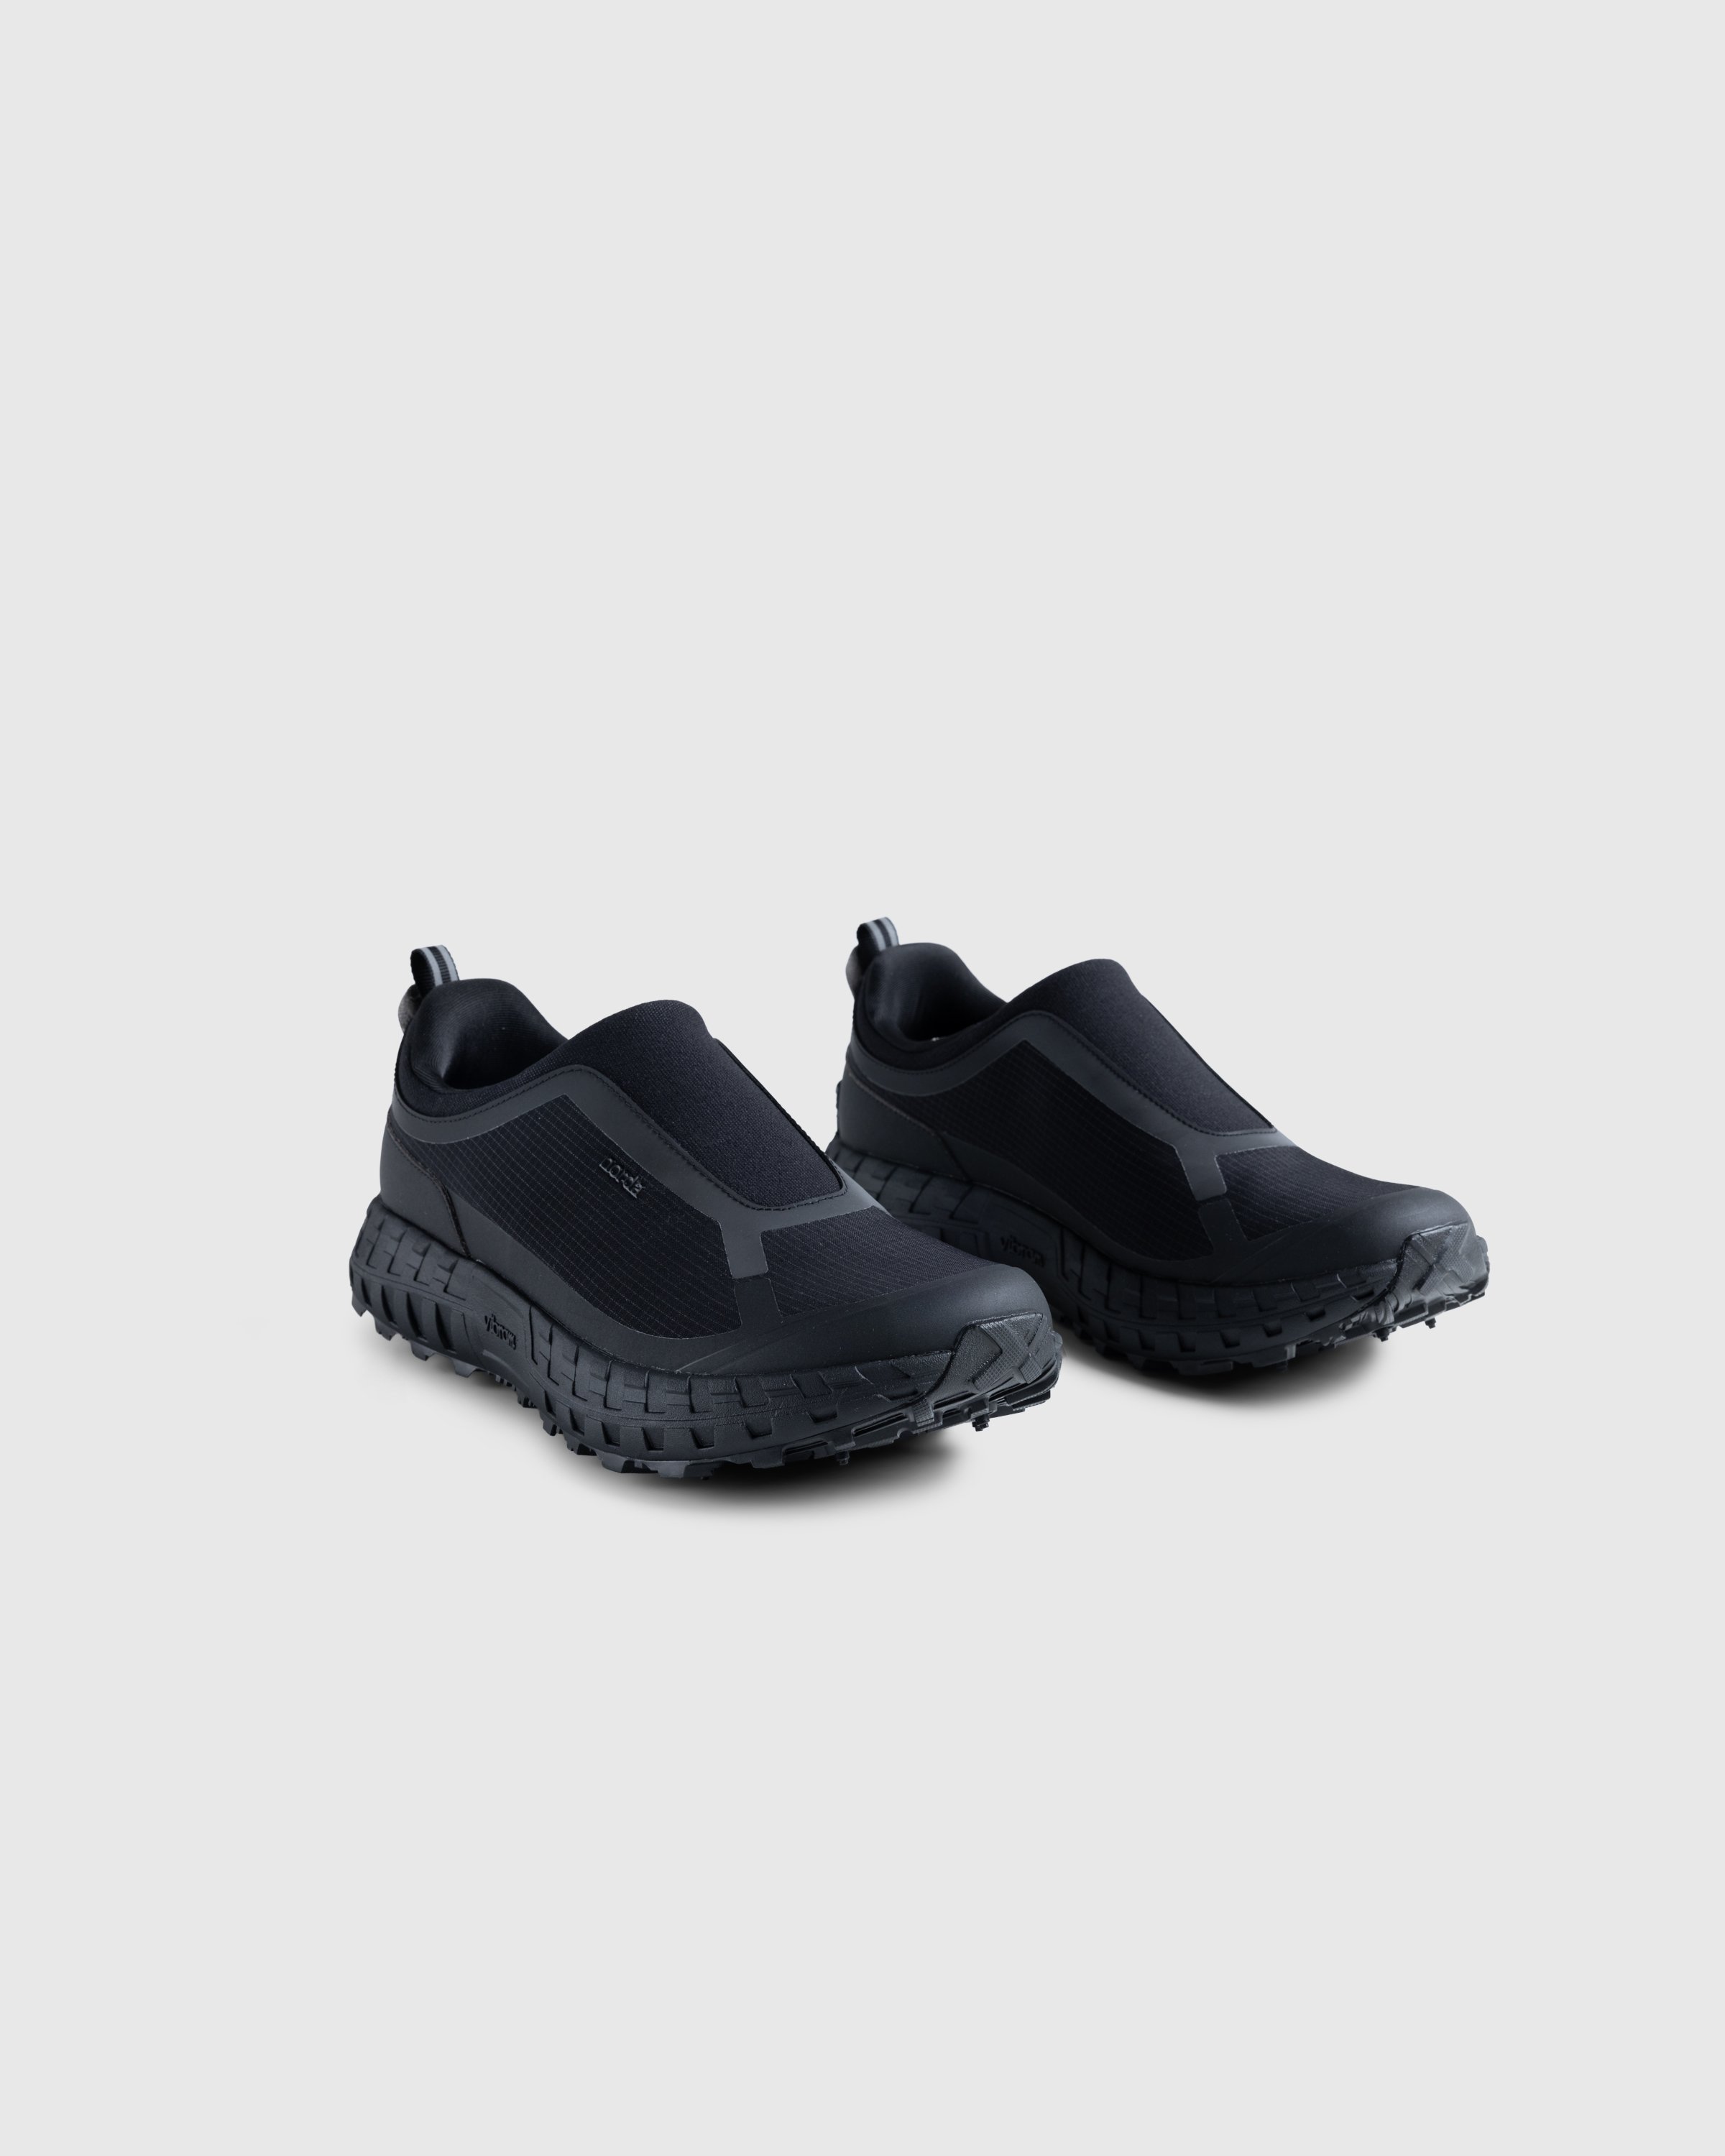 Norda - NORDA003-W - Footwear - Black - Image 3